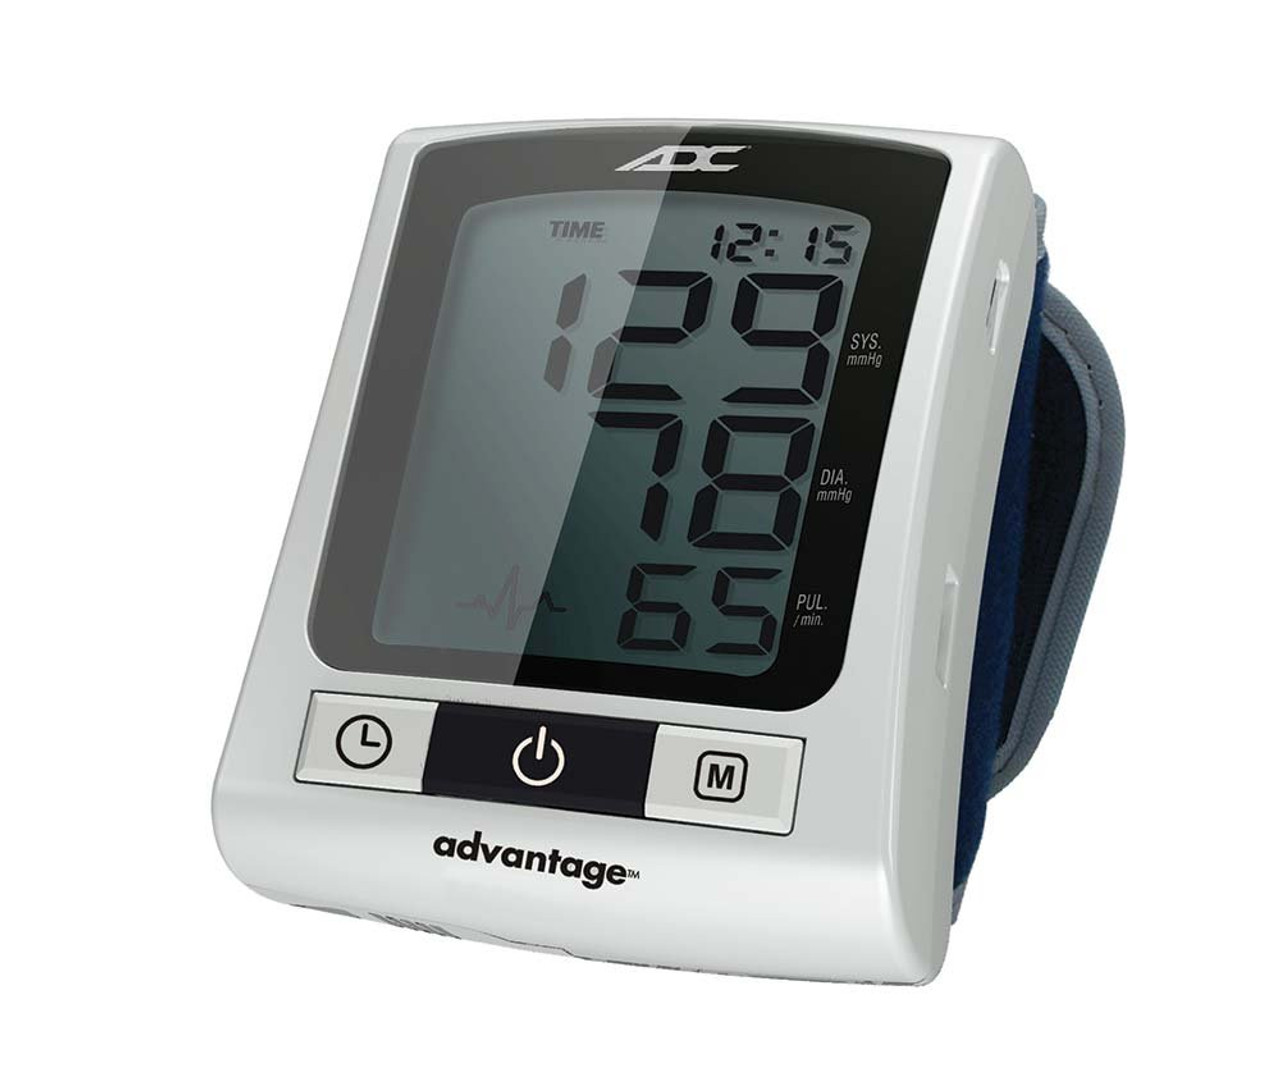 Blood Pressure Monitor Wrist Cuff - Accurate Automatic Digital BP